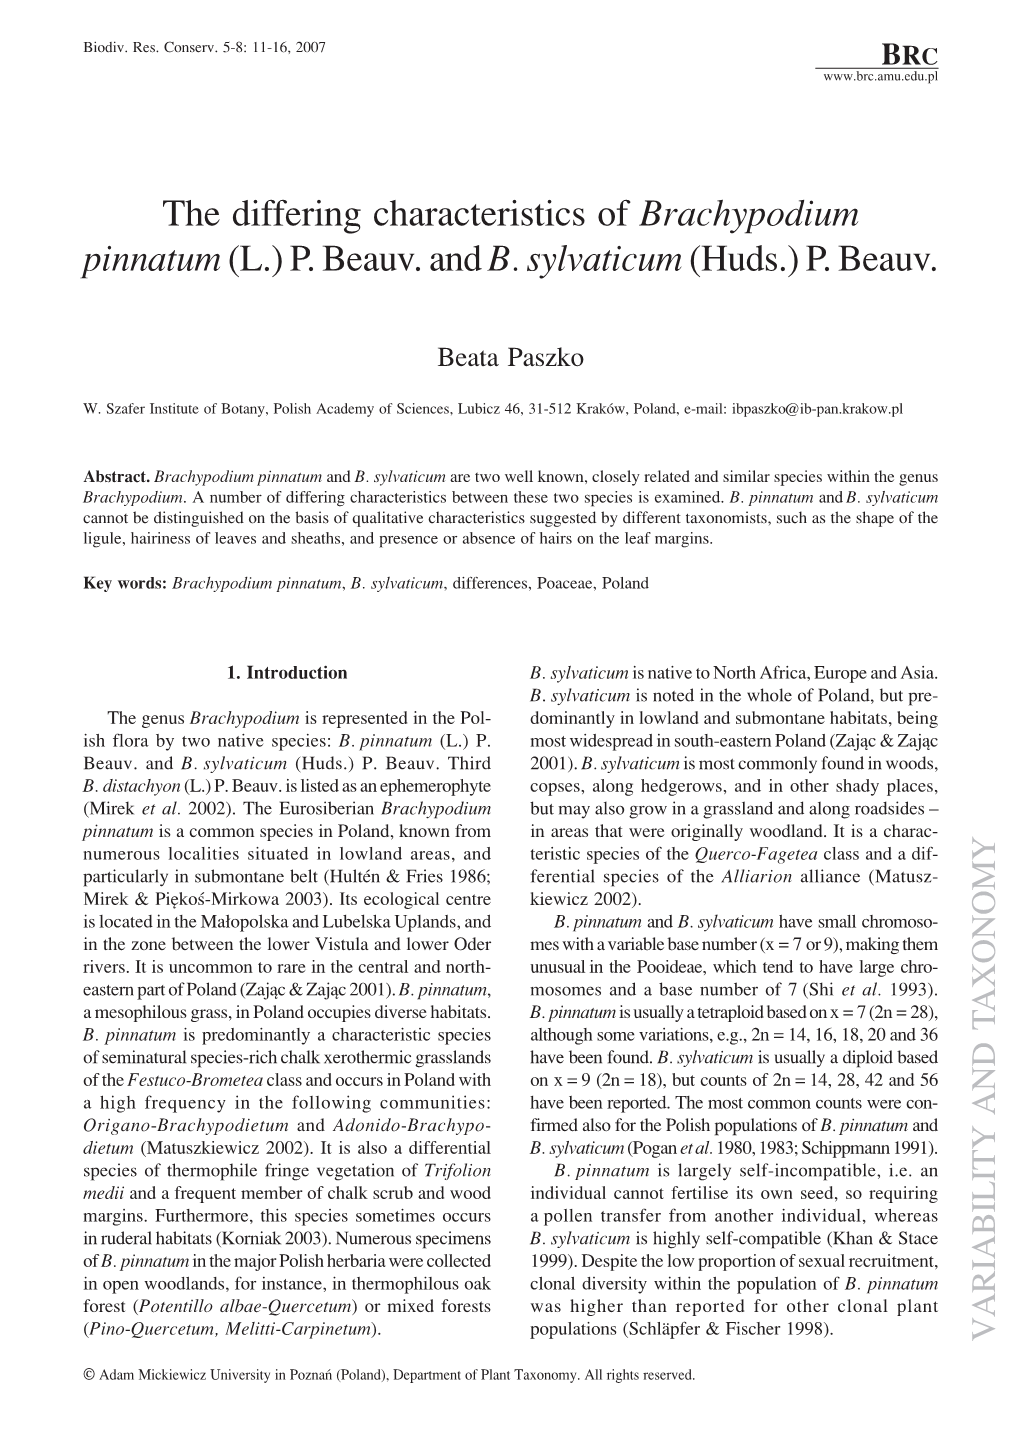 The Differing Characteristics of Brachypodium Pinnatum (L.) P